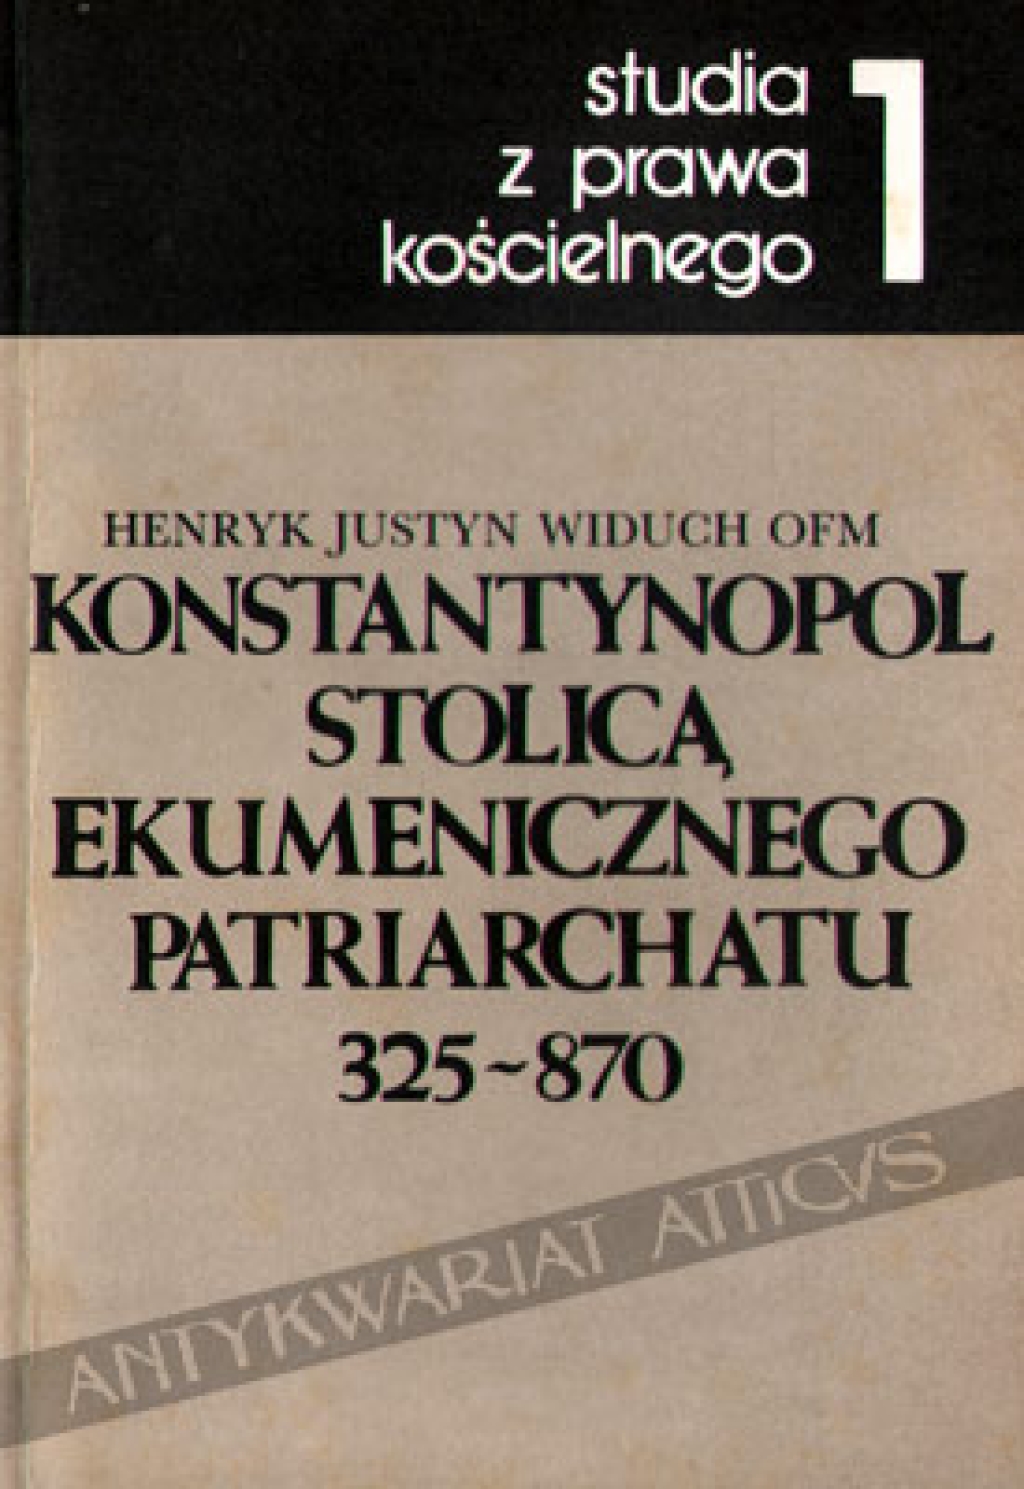 Konstantynopol stolicą ekumenicznego patriarchatu 325-870 